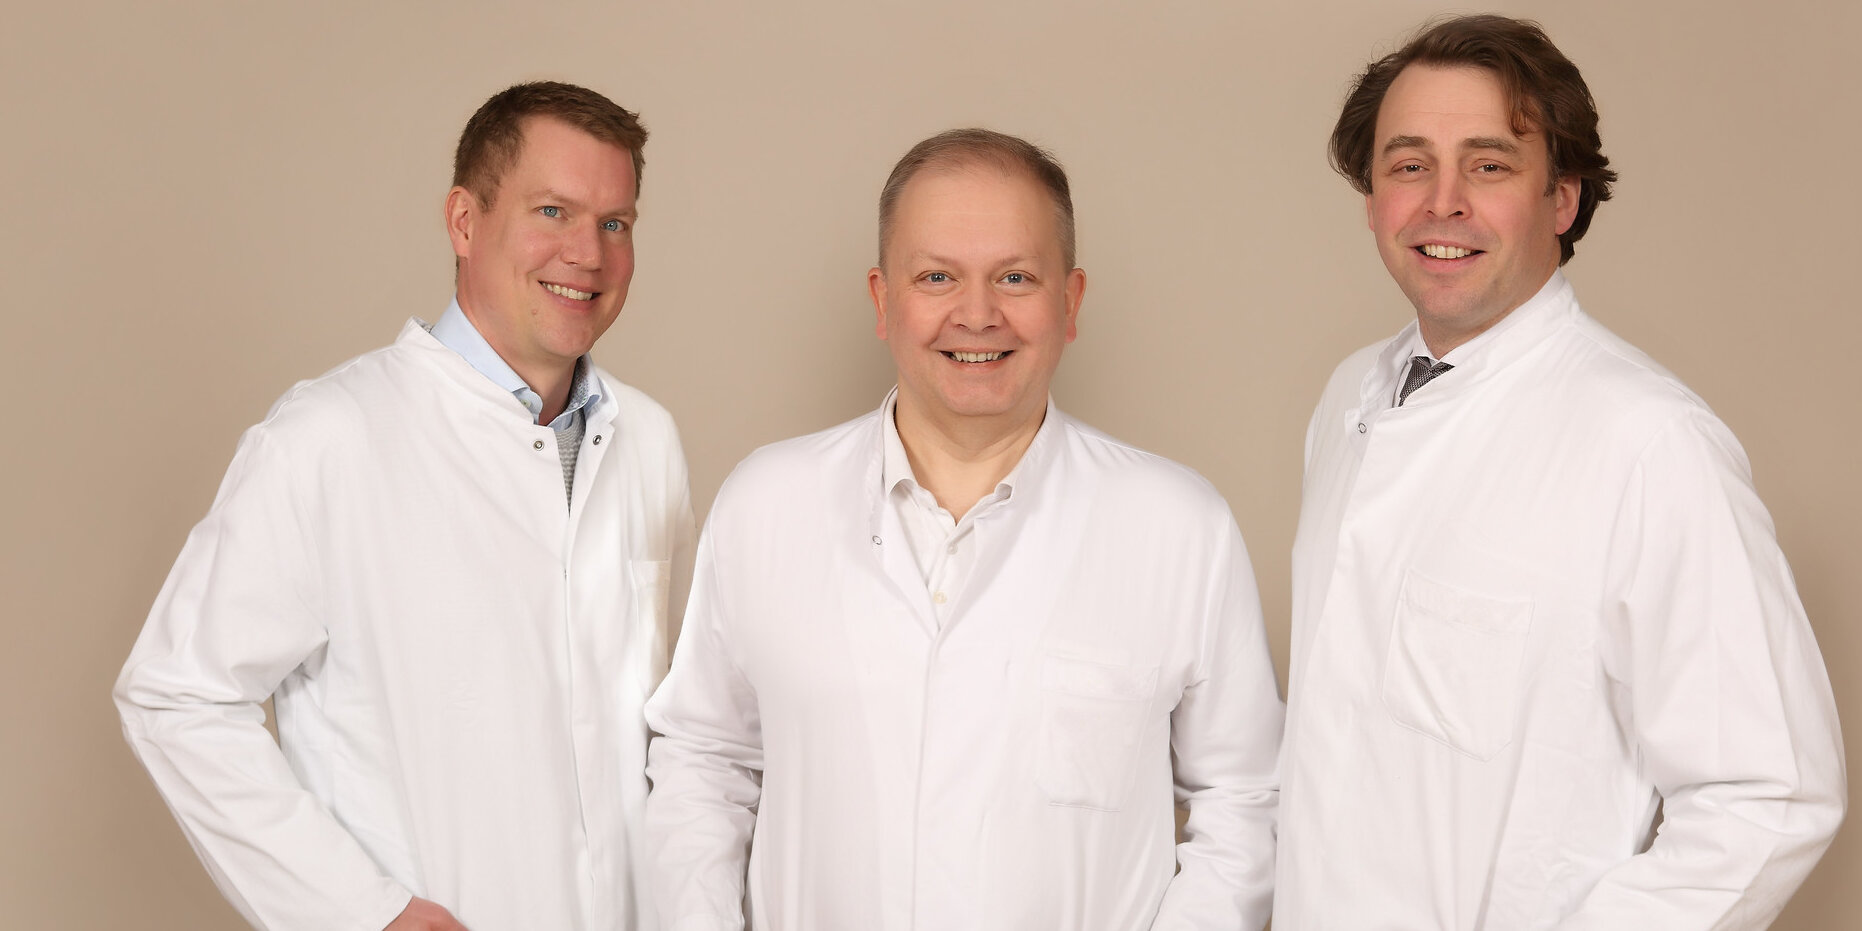 Gruppenbild von drei Ärzten des Gefäßzentrums